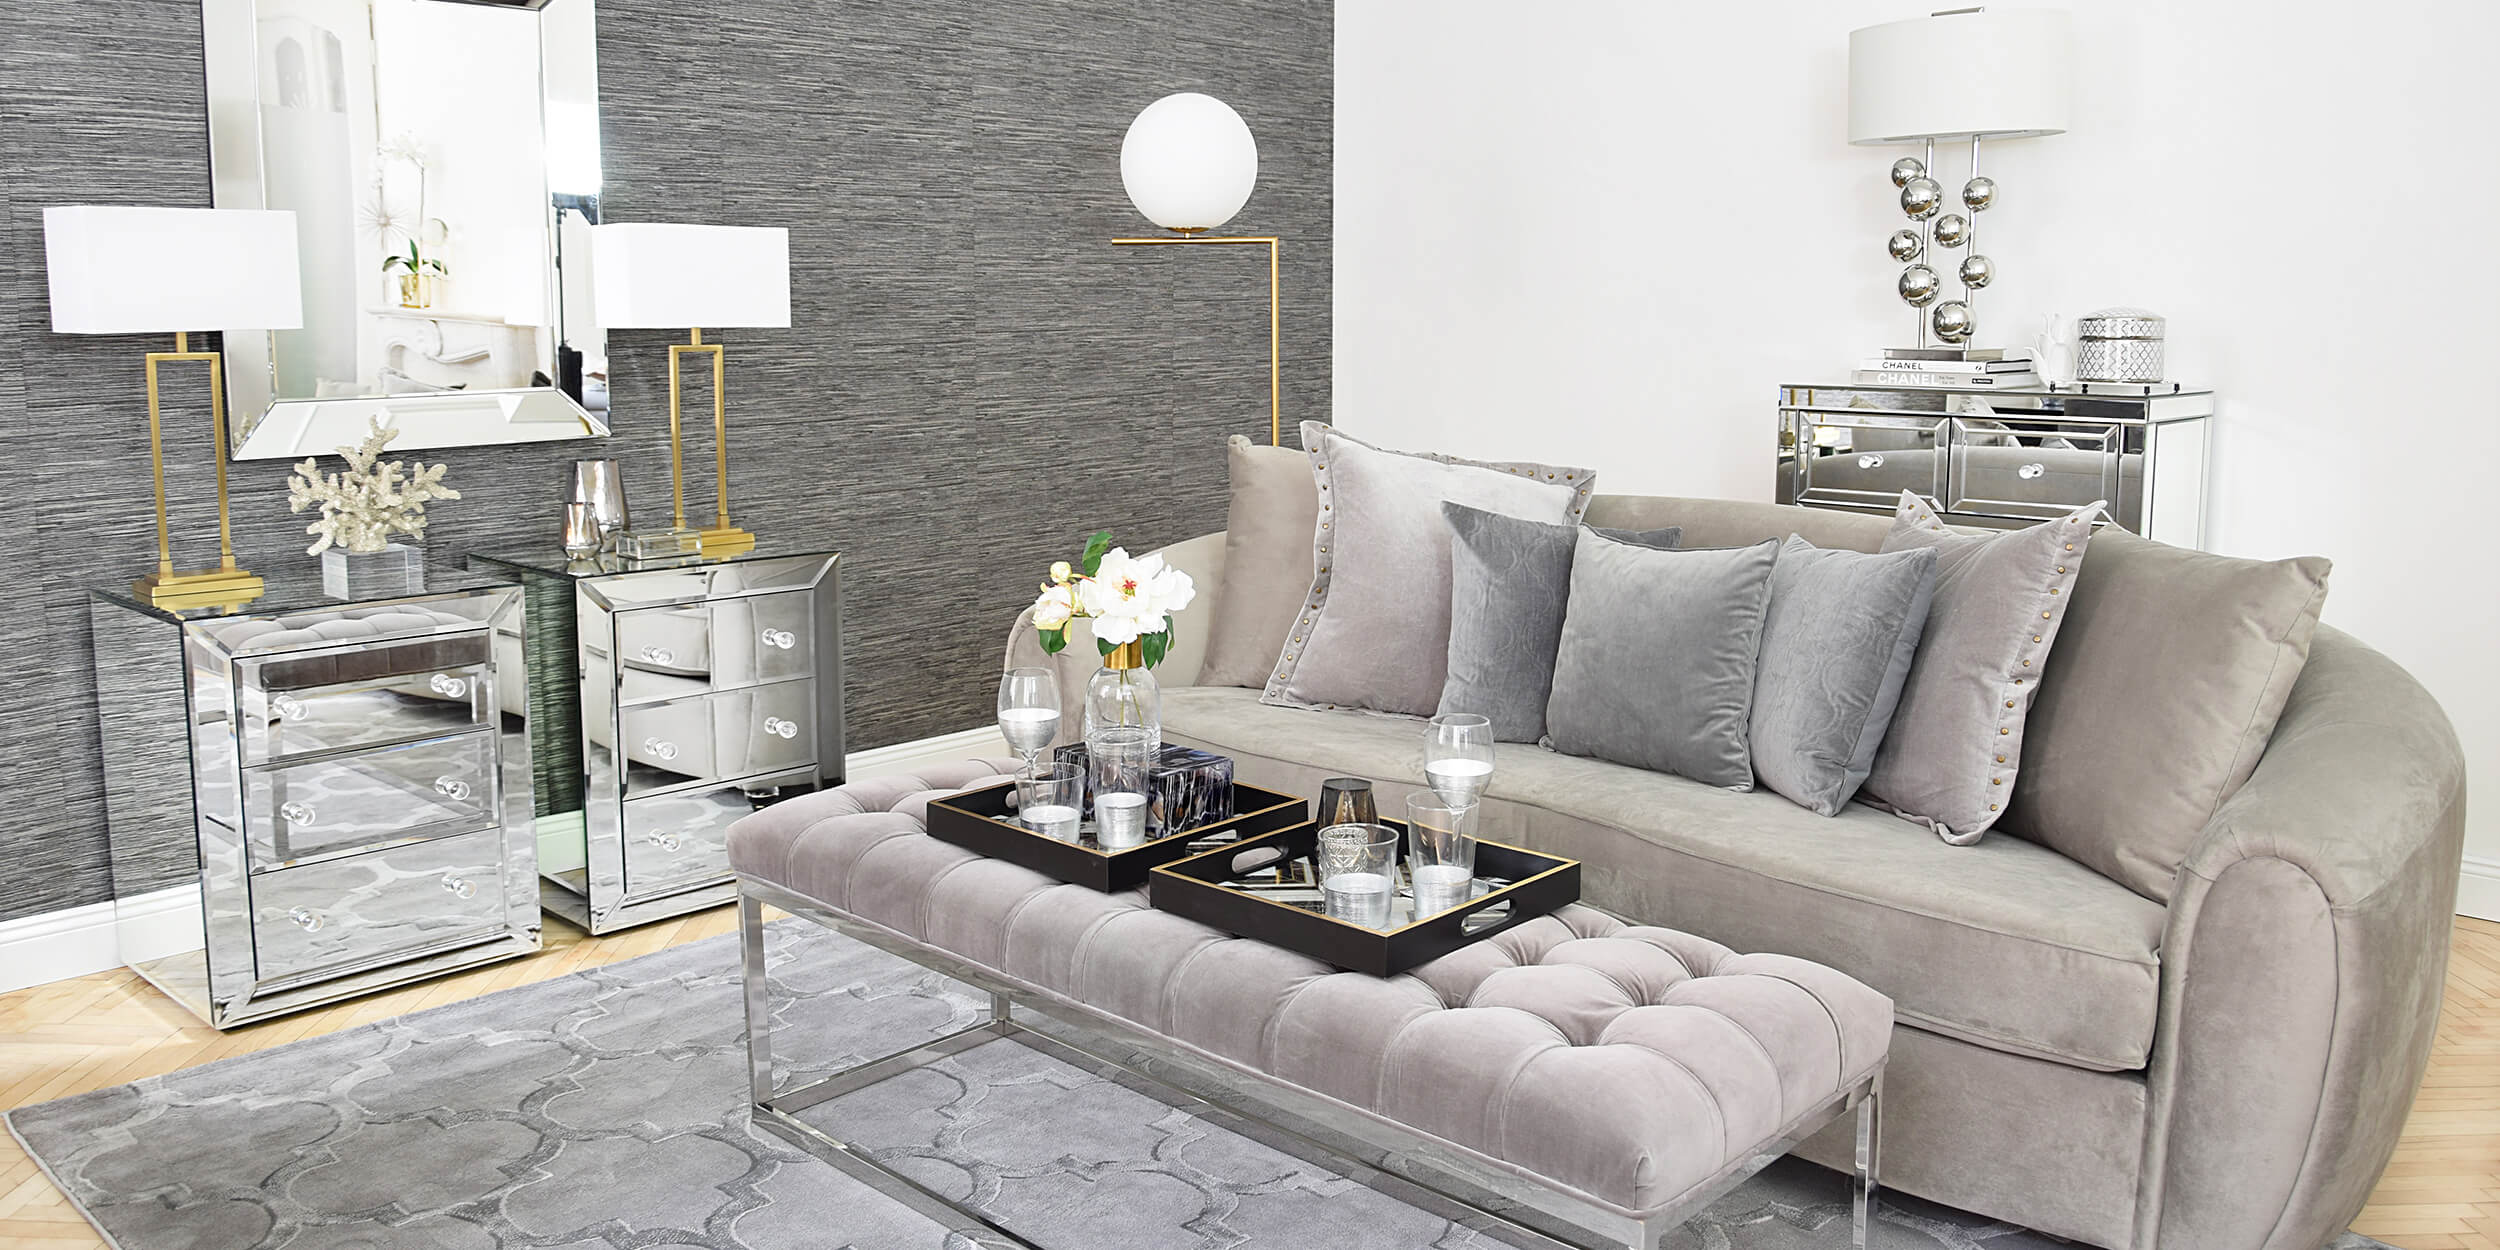 neuer look! livingroom elegance - wohnzimmer in grautönen - #instashop